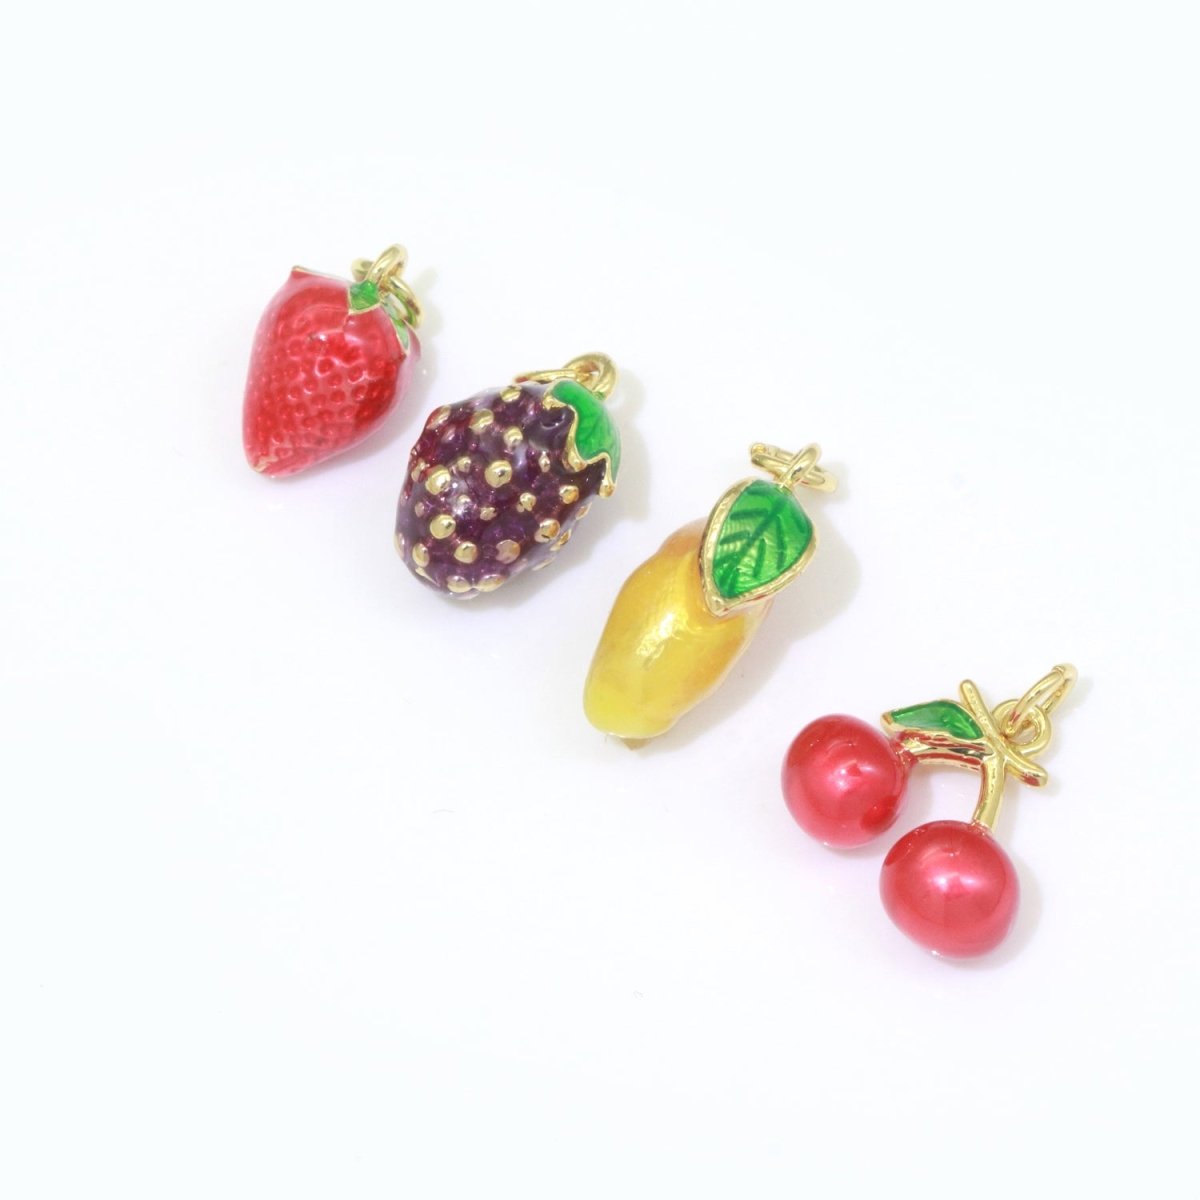 Dainty fruit charm Red Strawberry, Mango, Raspberry, Cherry Charm Lead Nickel free, Jewelry making supplies Enamel Jewelry Food M-542 - M-544 M-551 - DLUXCA